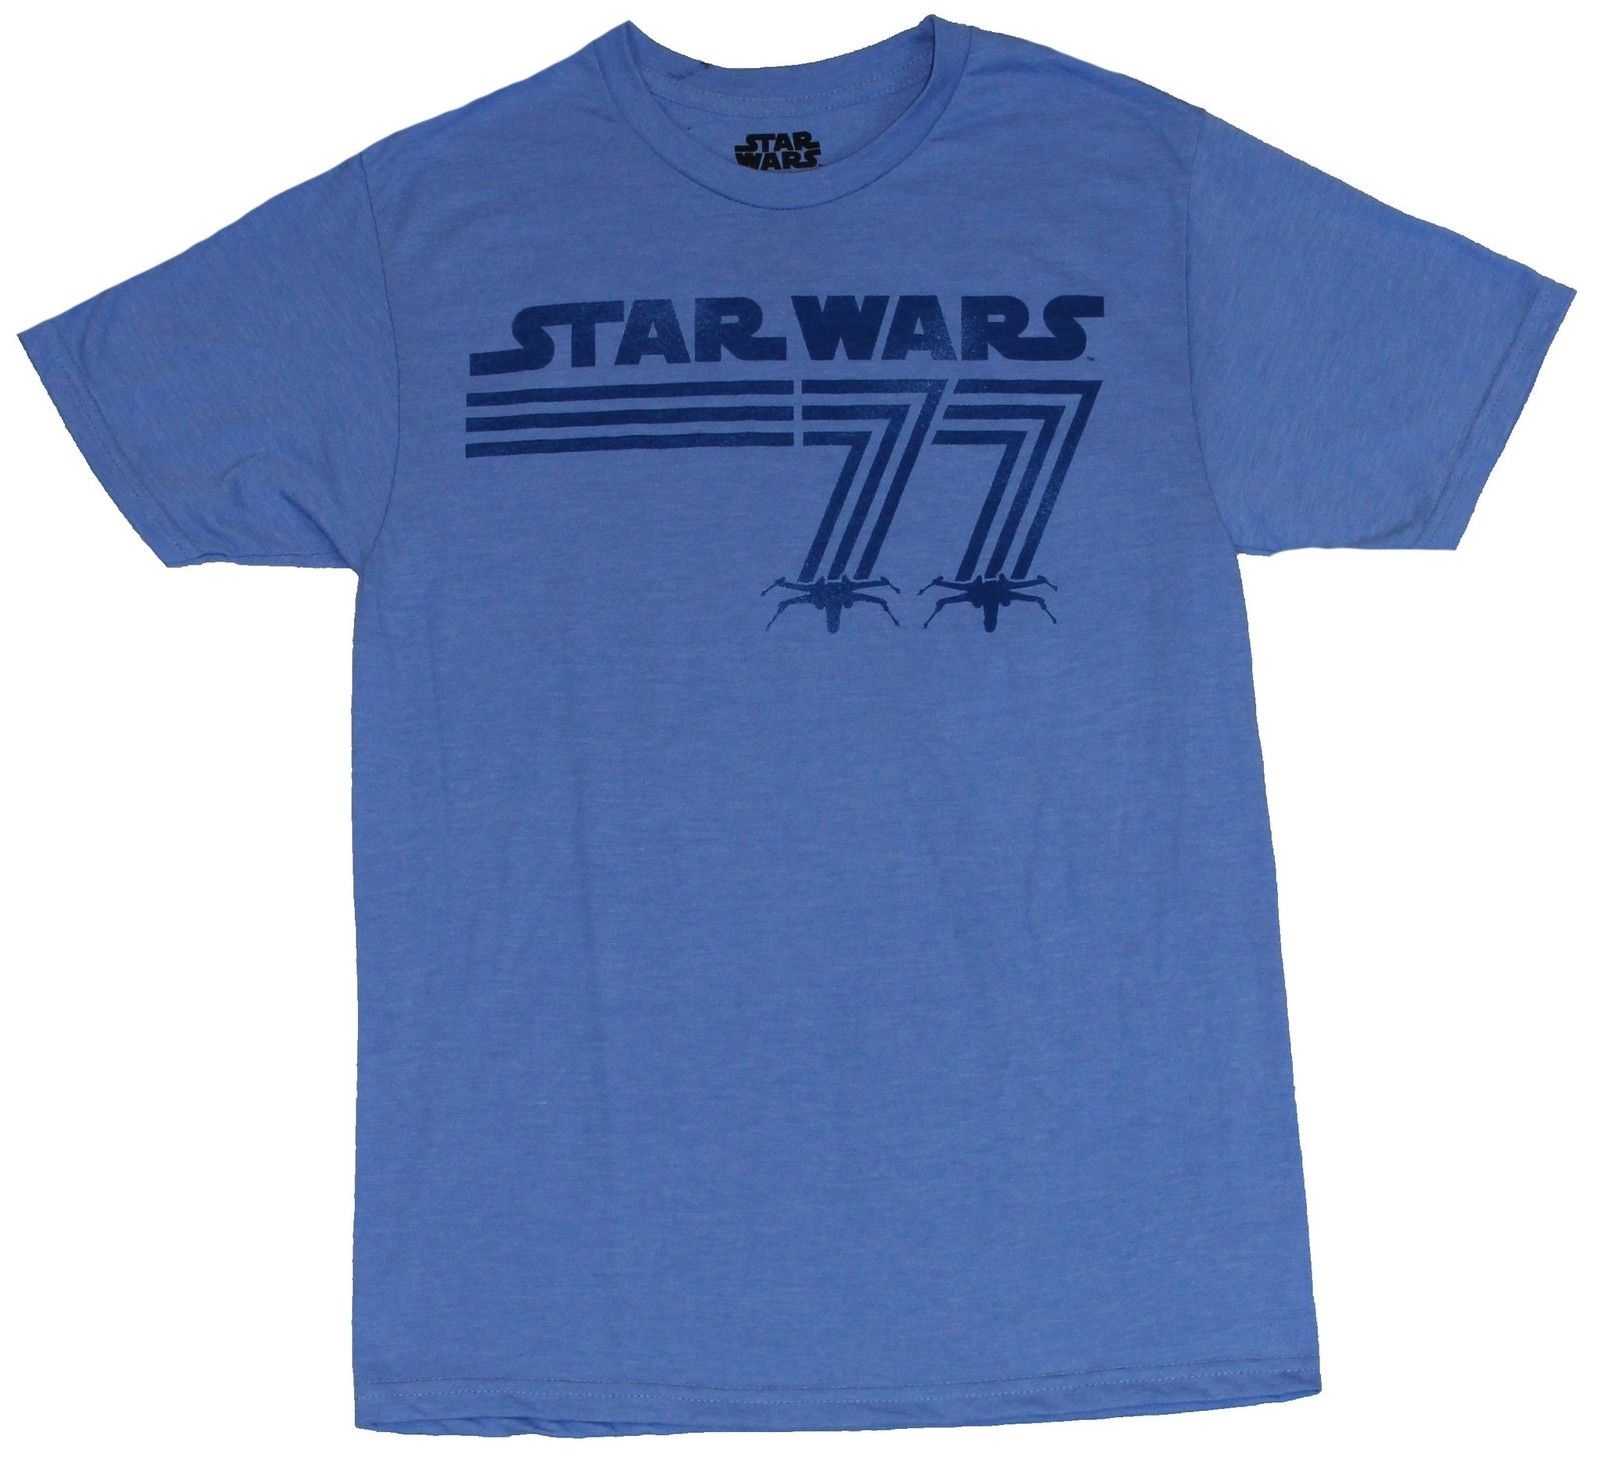 star wars 77 shirt